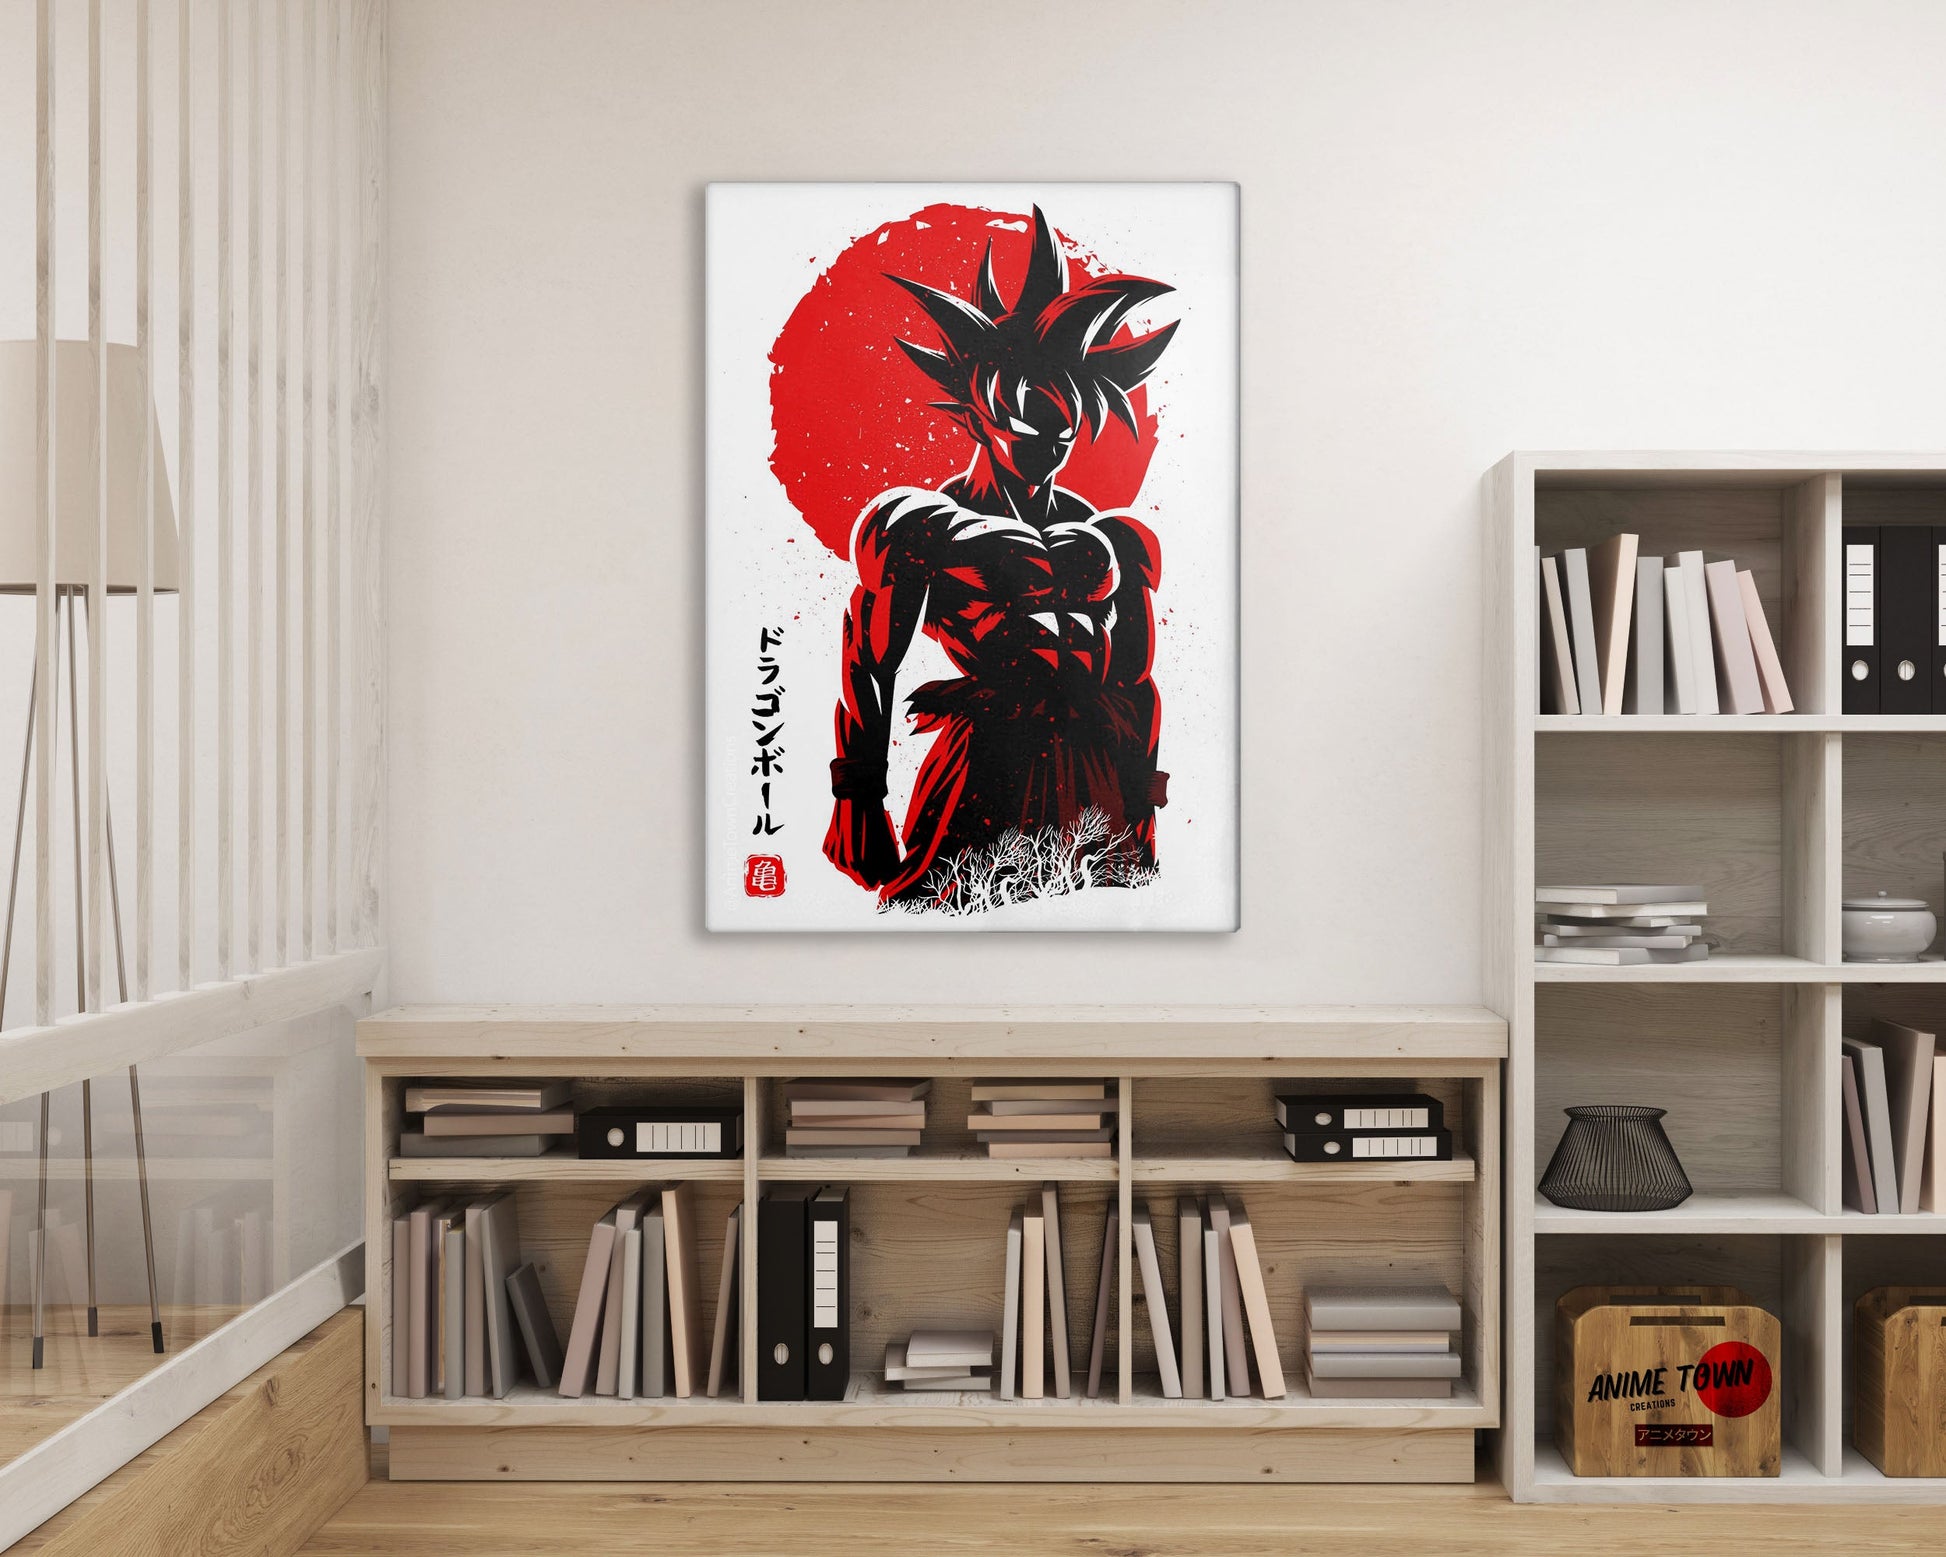 Anime Town Creations Metal Poster Dragon Ball Goku Minimalist Red 16" x 24" Home Goods - Anime Dragon Ball Metal Poster